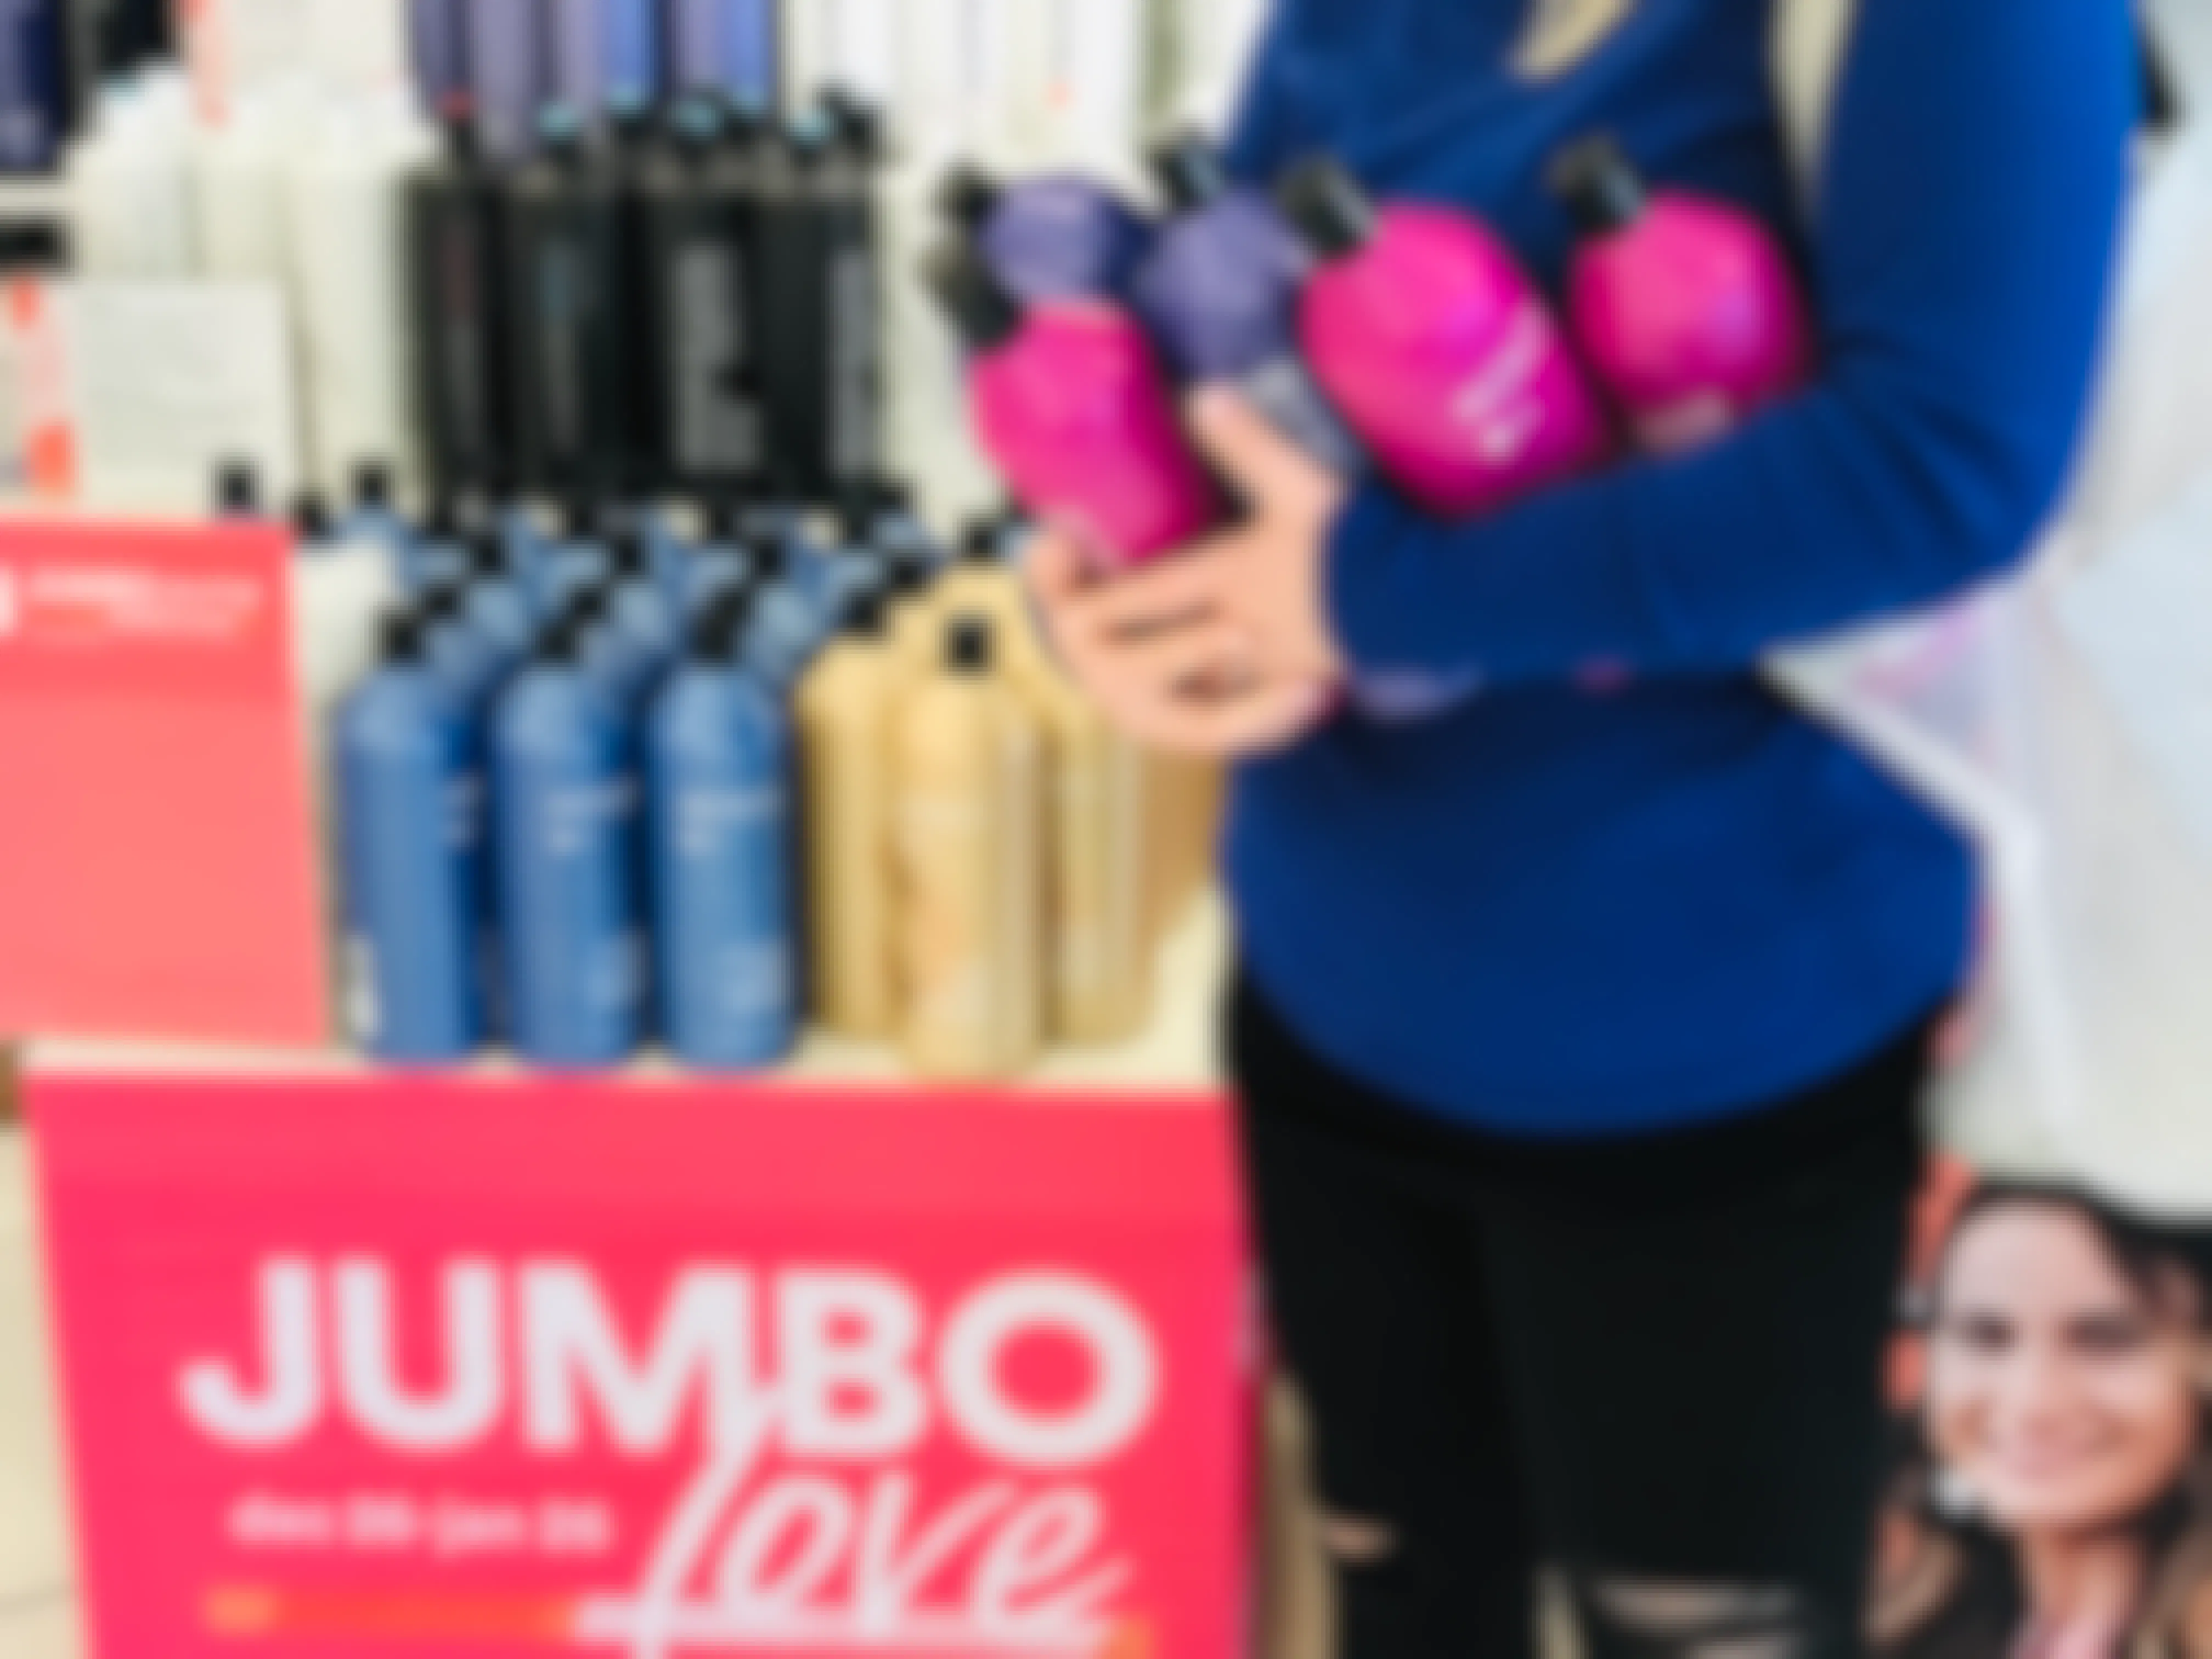 woman holds armfuls of shampoos at jumbo love at ulta